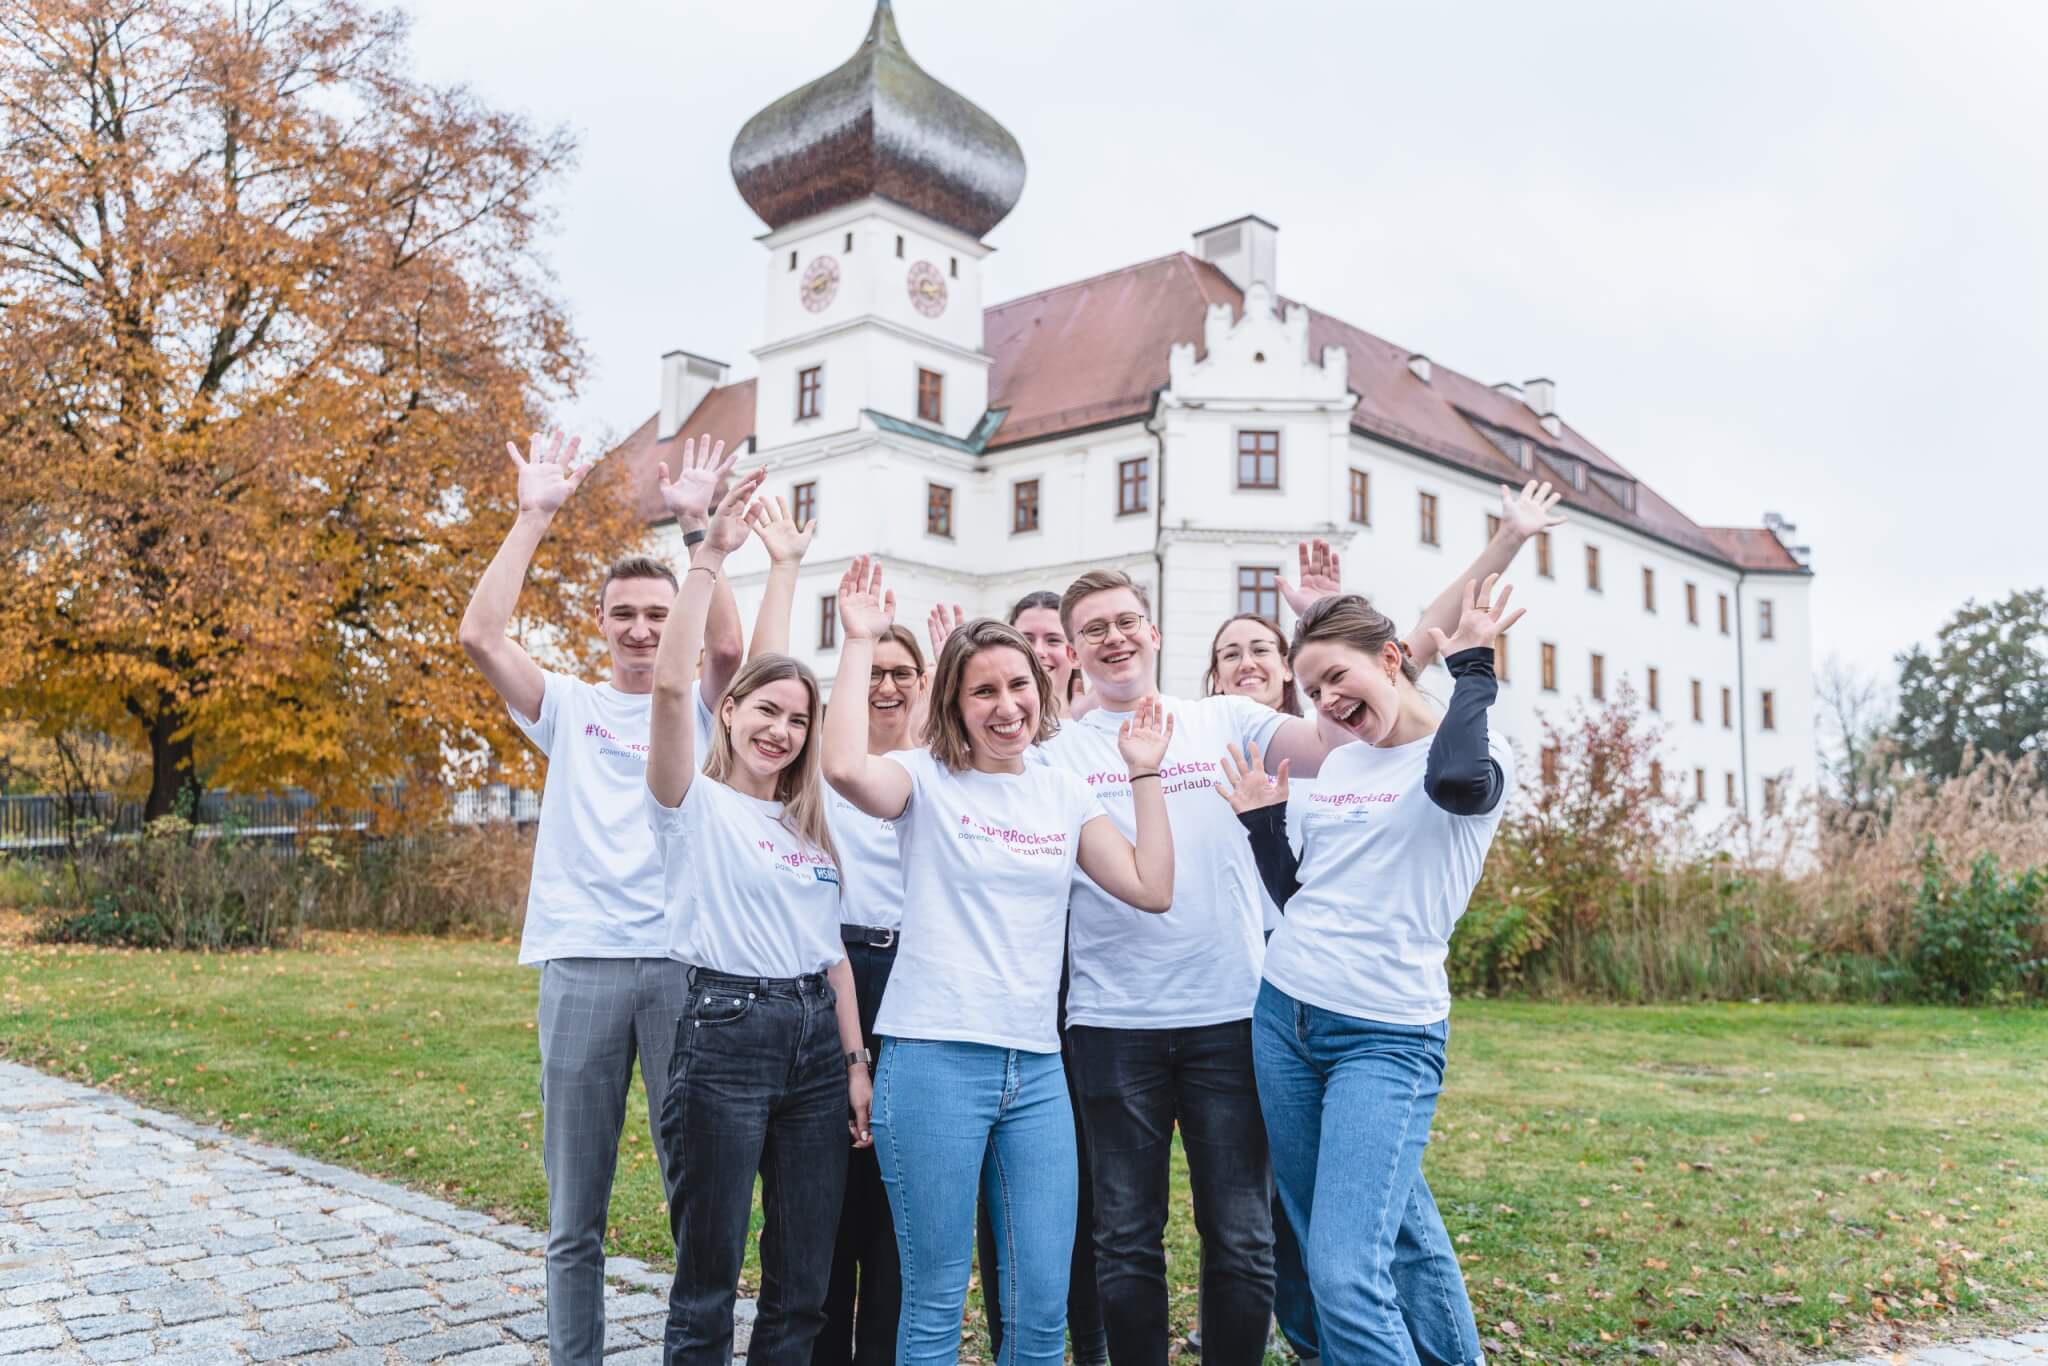 About Hospitality: Thementag lockte über 200 junge Talente nach Berlin, Hamburg und München